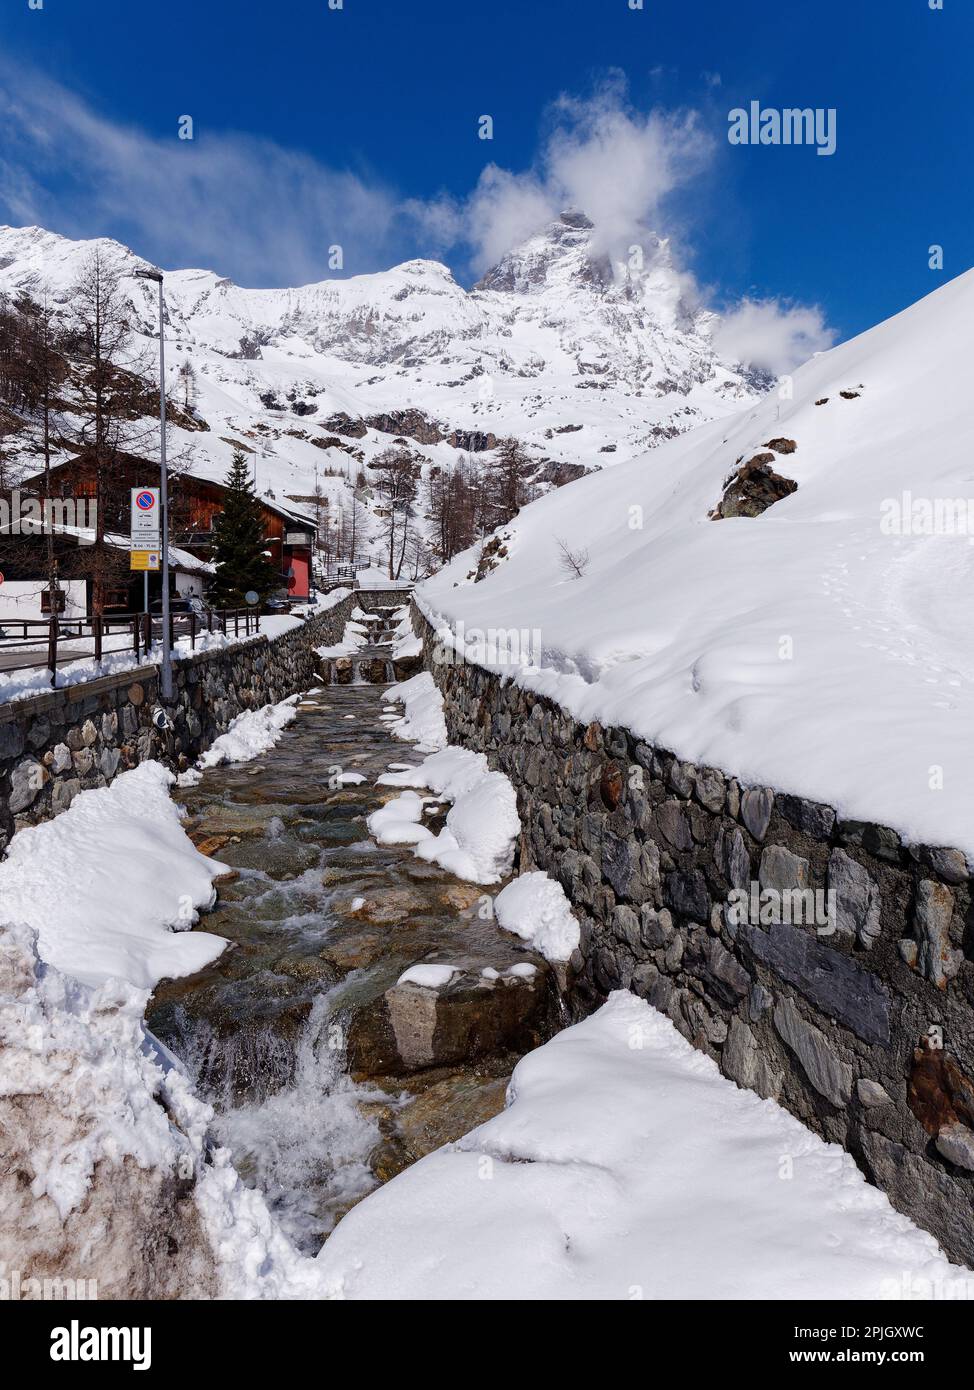 Scenario innevato nella località sciistica di Breuil-Cervinia in Valle d'Aosta. Torrente in primo piano con alle spalle il monte Cervino. Foto Stock